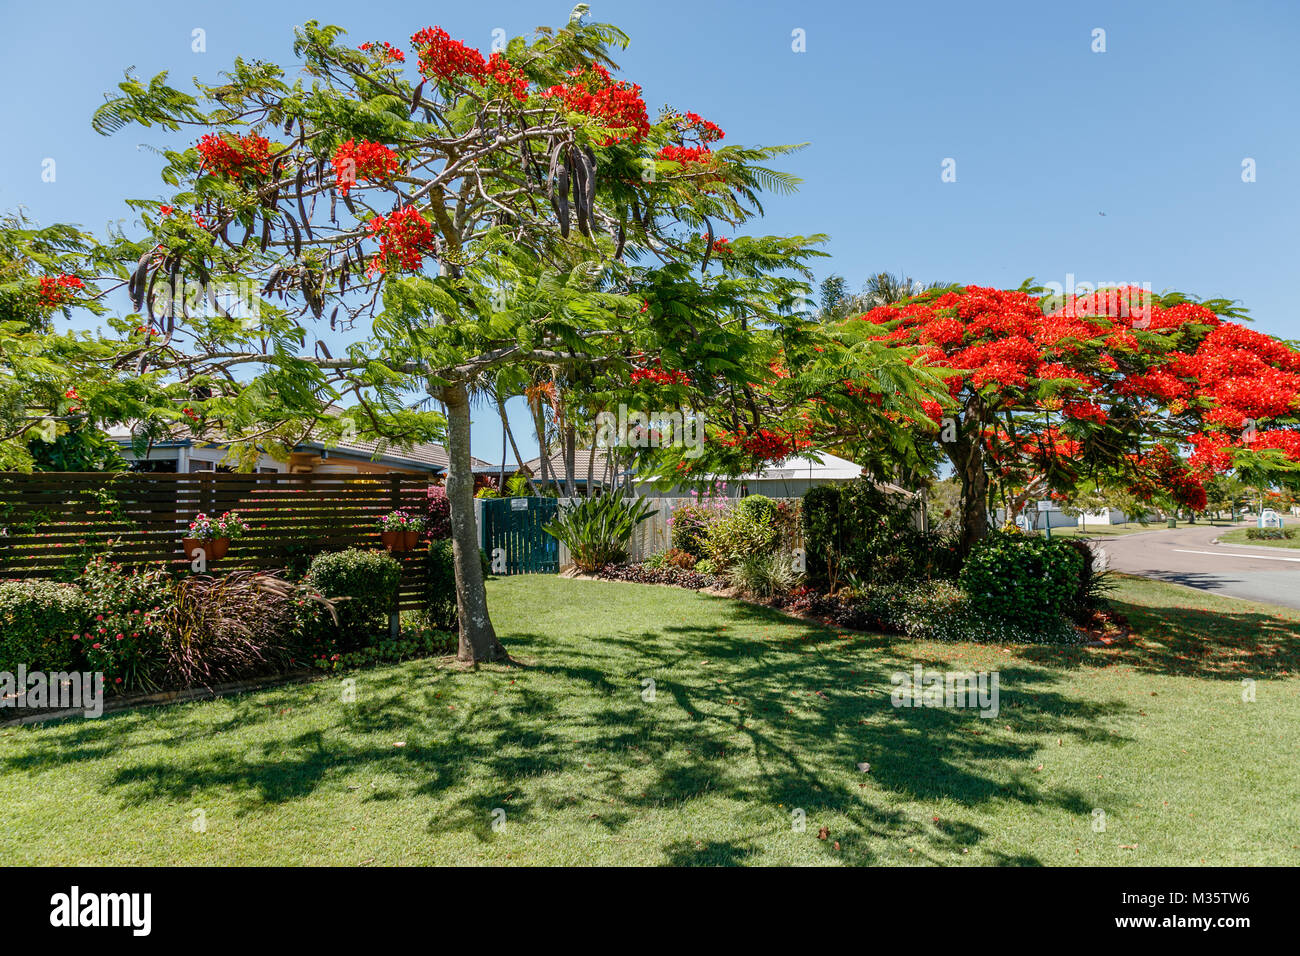 La floraison de l'arbre flamboyant Delonix regia ou dans la cour. Queensland, Australie Banque D'Images